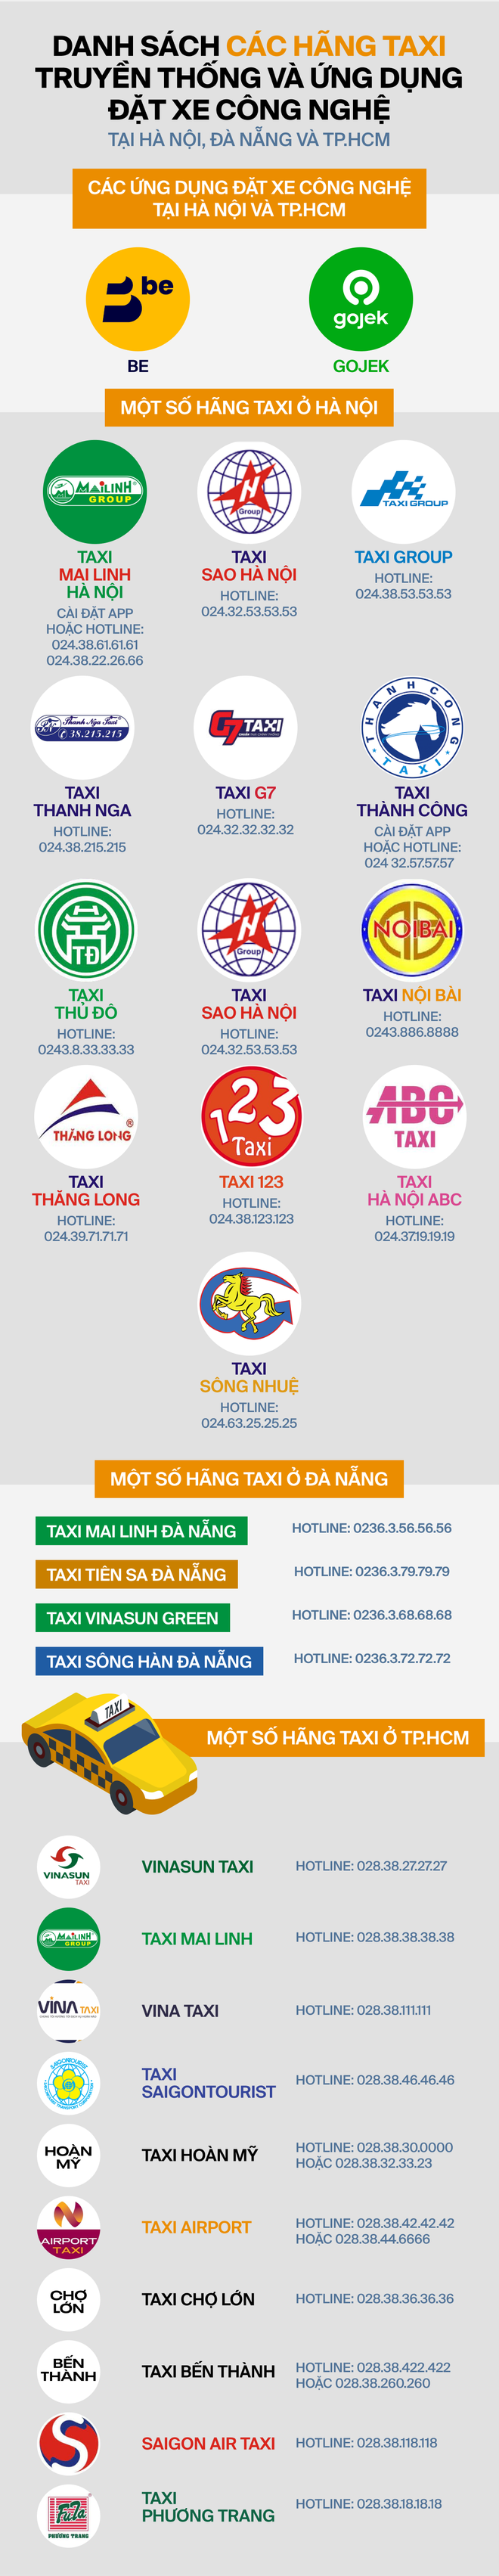 Chán Grab vì cước phí đắt đỏ, hành khách quay xe gọi taxi truyền thống và loạt app đặt xe khác - Ảnh 3.